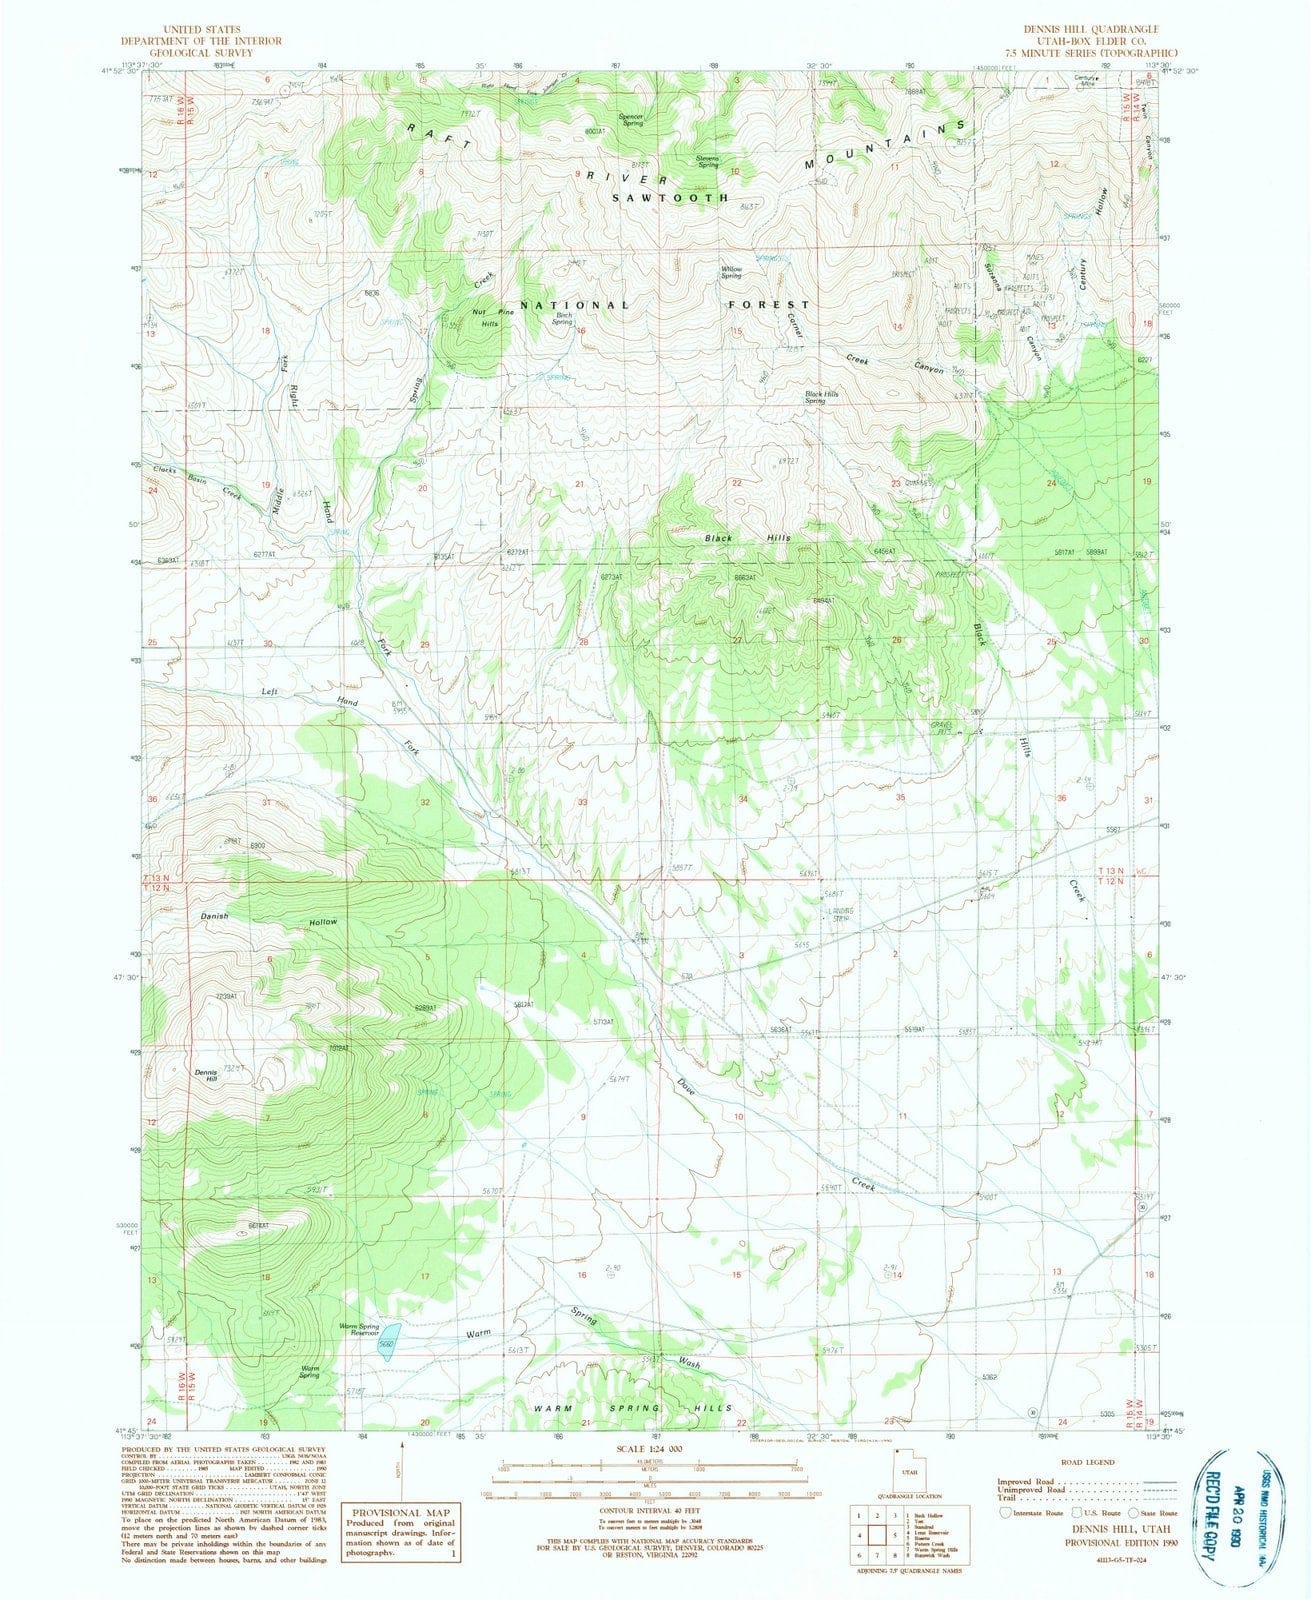 1990 Dennis Hill, UT - Utah - USGS Topographic Map